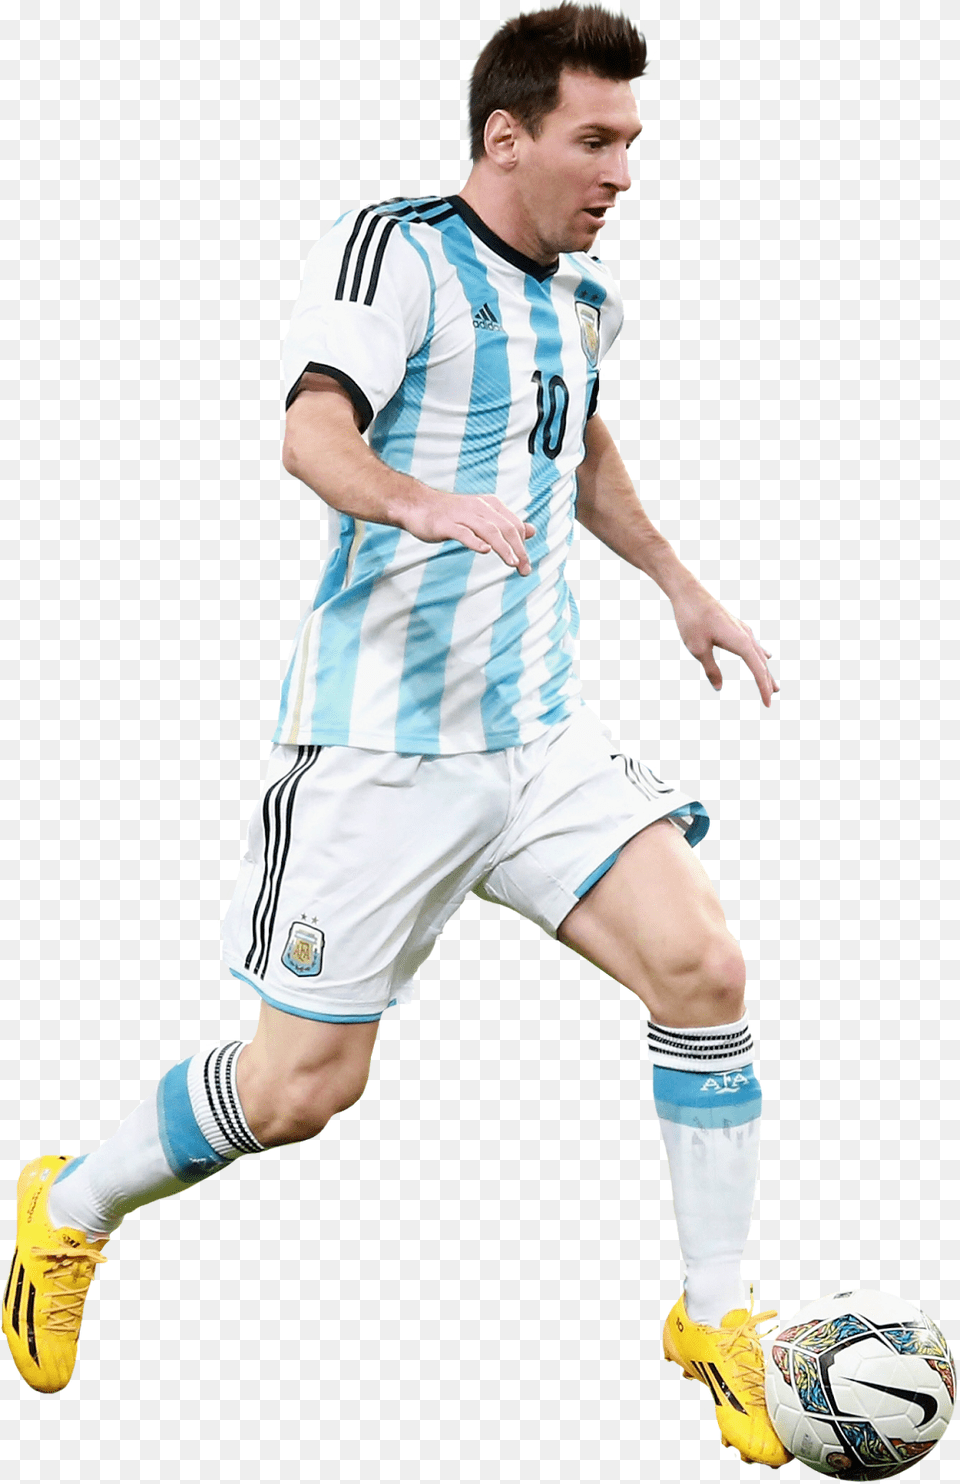 Lionel Messi Render Jugador Pateando La Pelota, Ball, Sport, Soccer Ball, Football Free Png